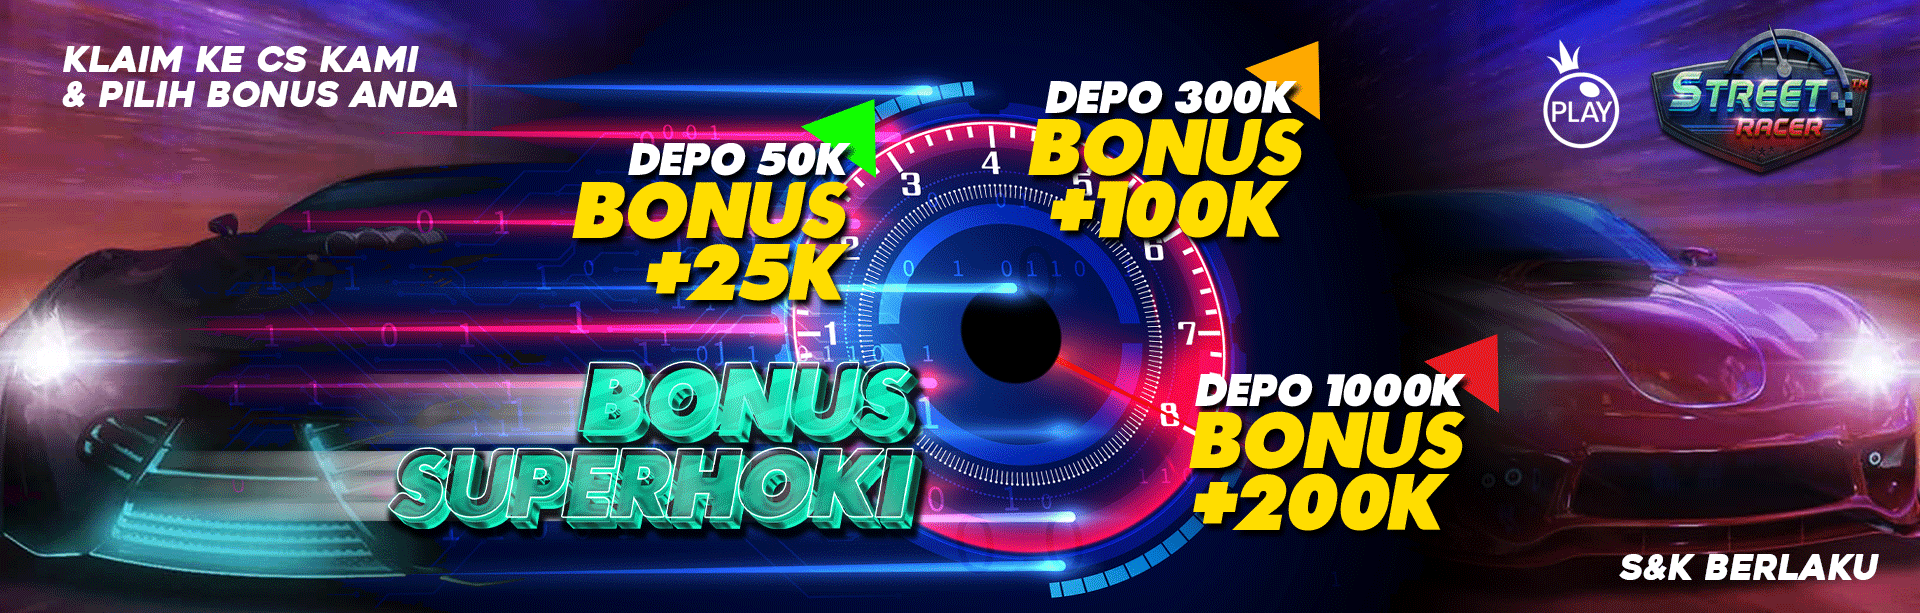 SuperBola Bonus Deposit SuperHoki